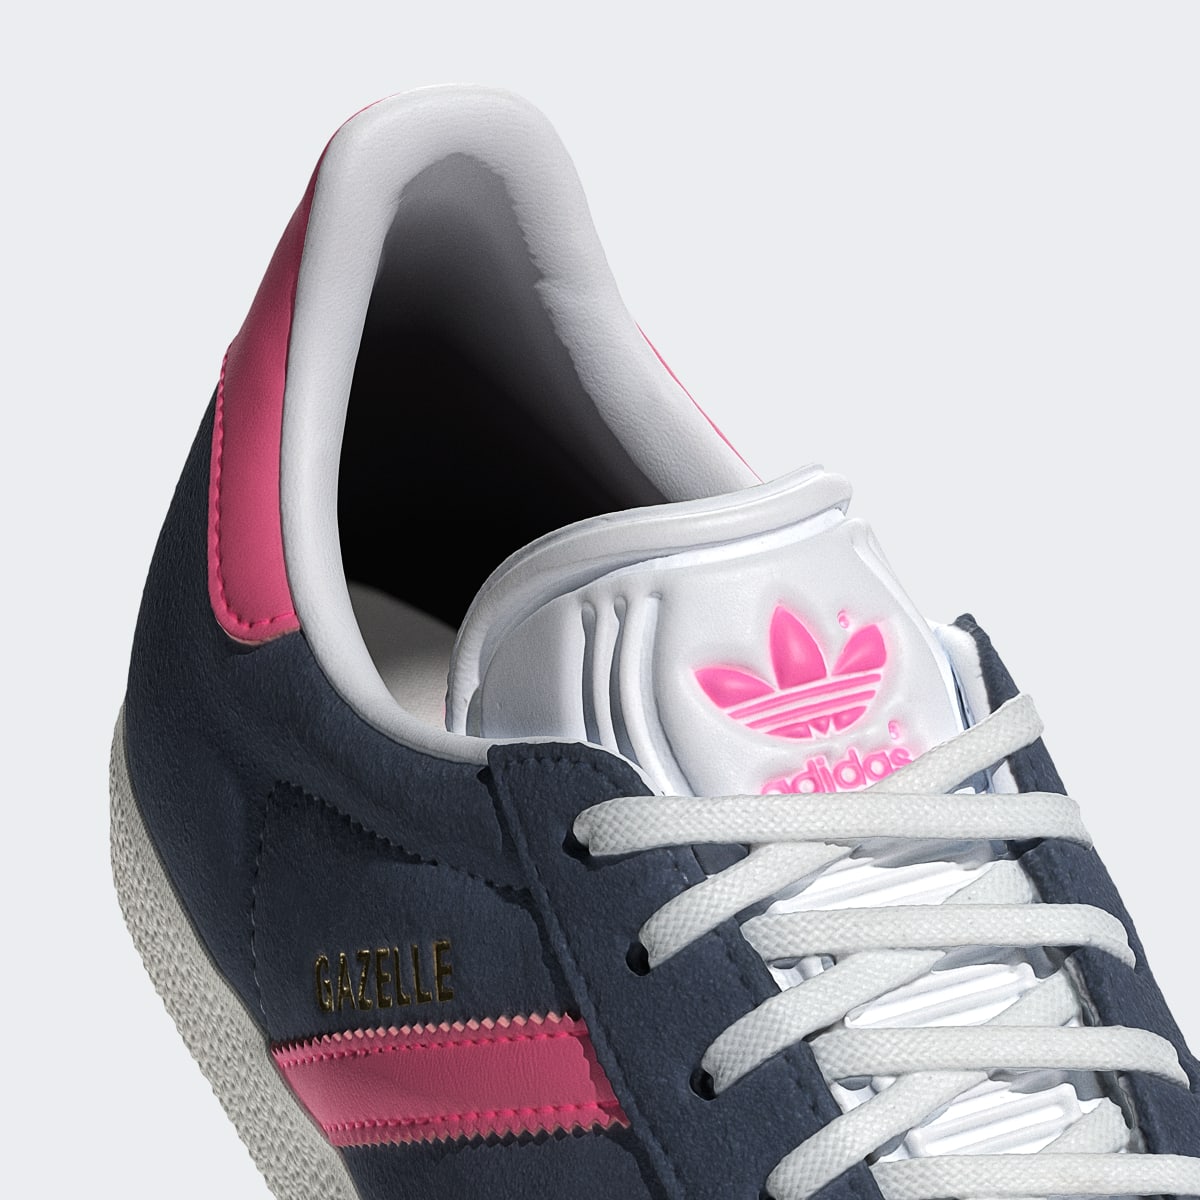 Adidas Gazelle Schuh. 9